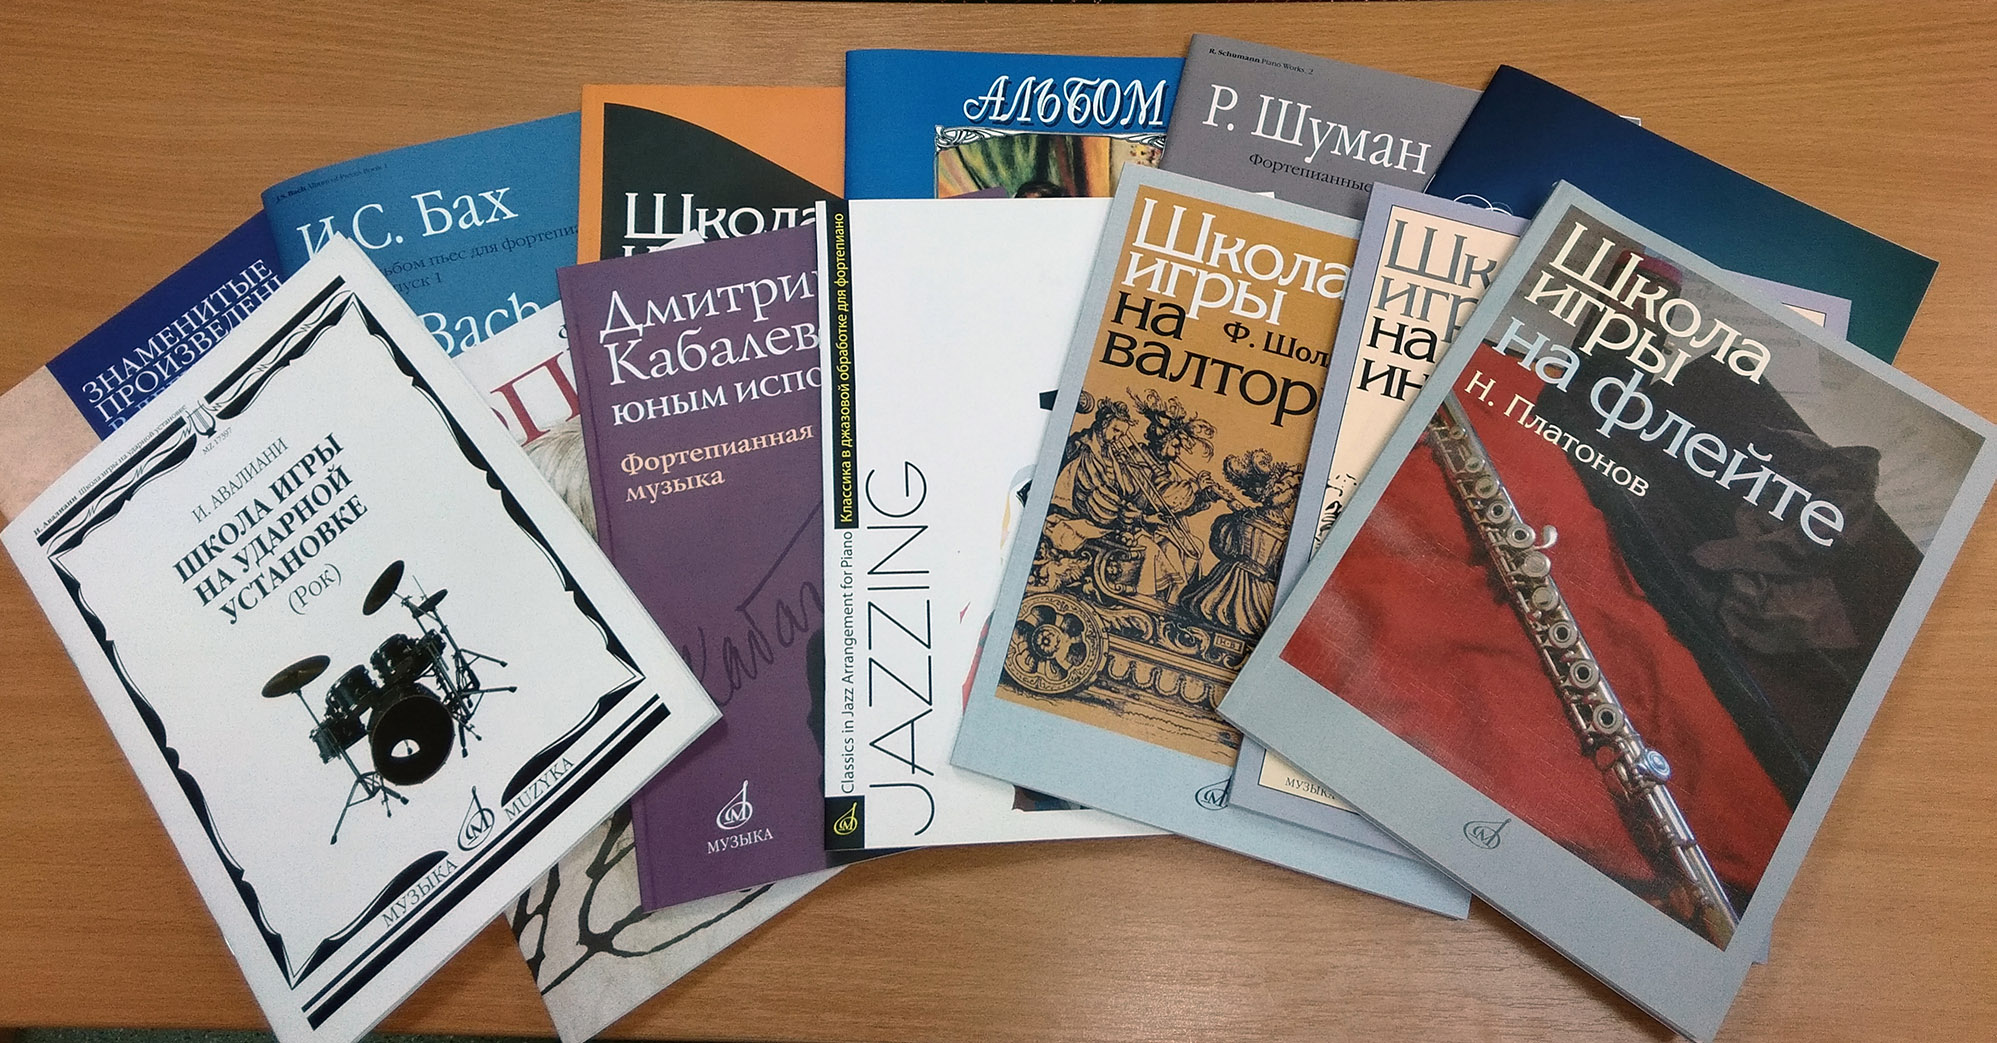 Сургутский колледж пополнился новой учебной литературой